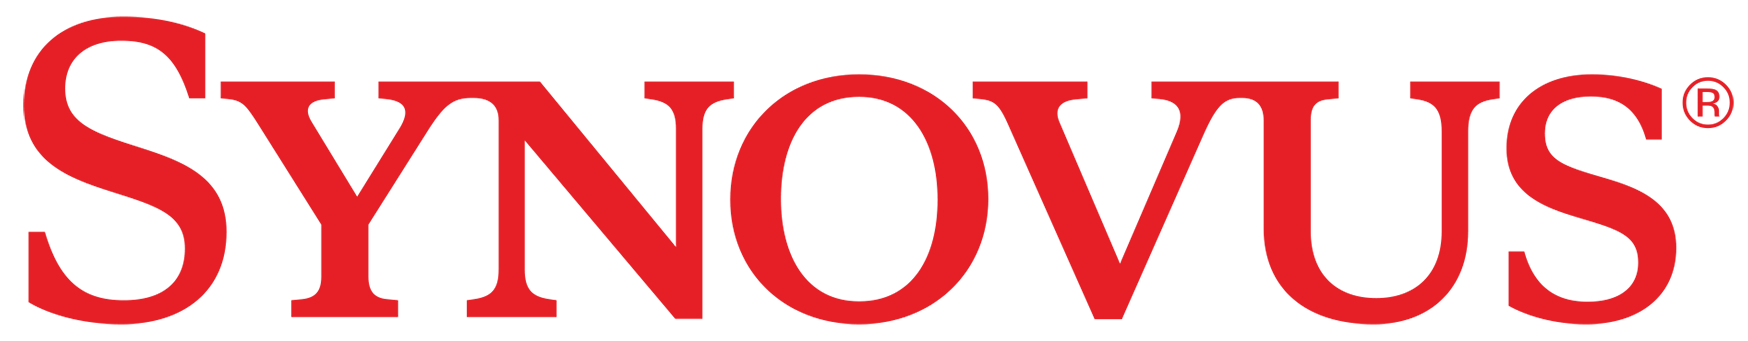 Synovus Company Logo